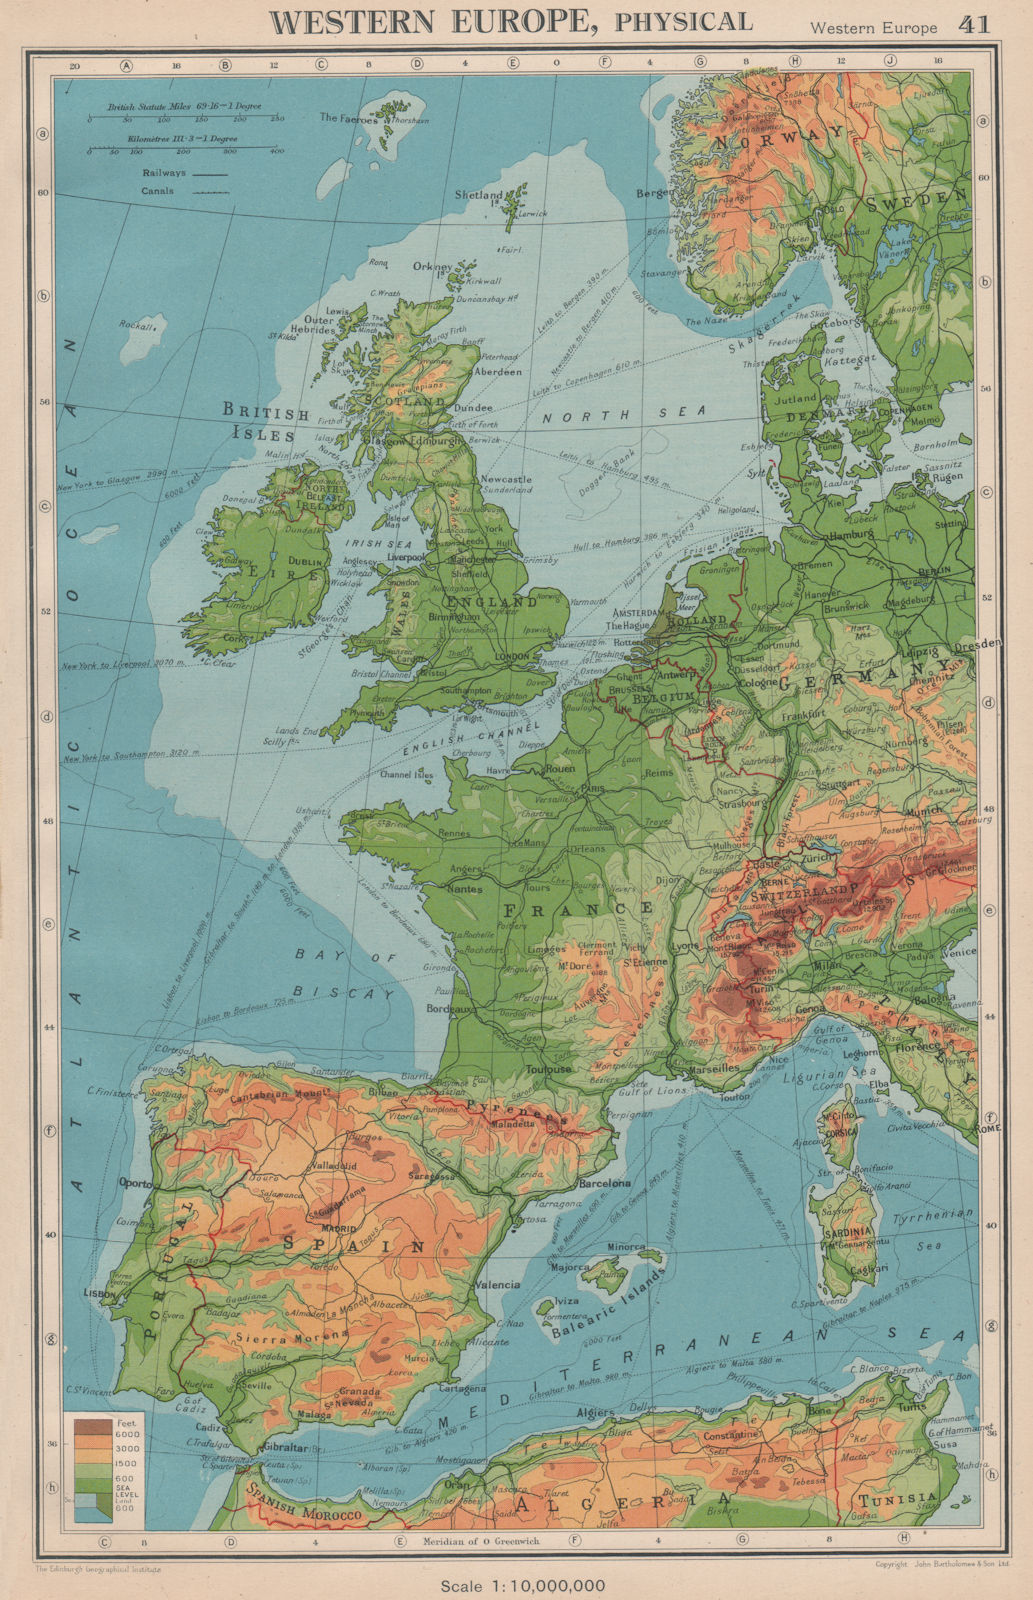 WESTERN EUROPE. Physical & main railways. BARTHOLOMEW 1944 old vintage map